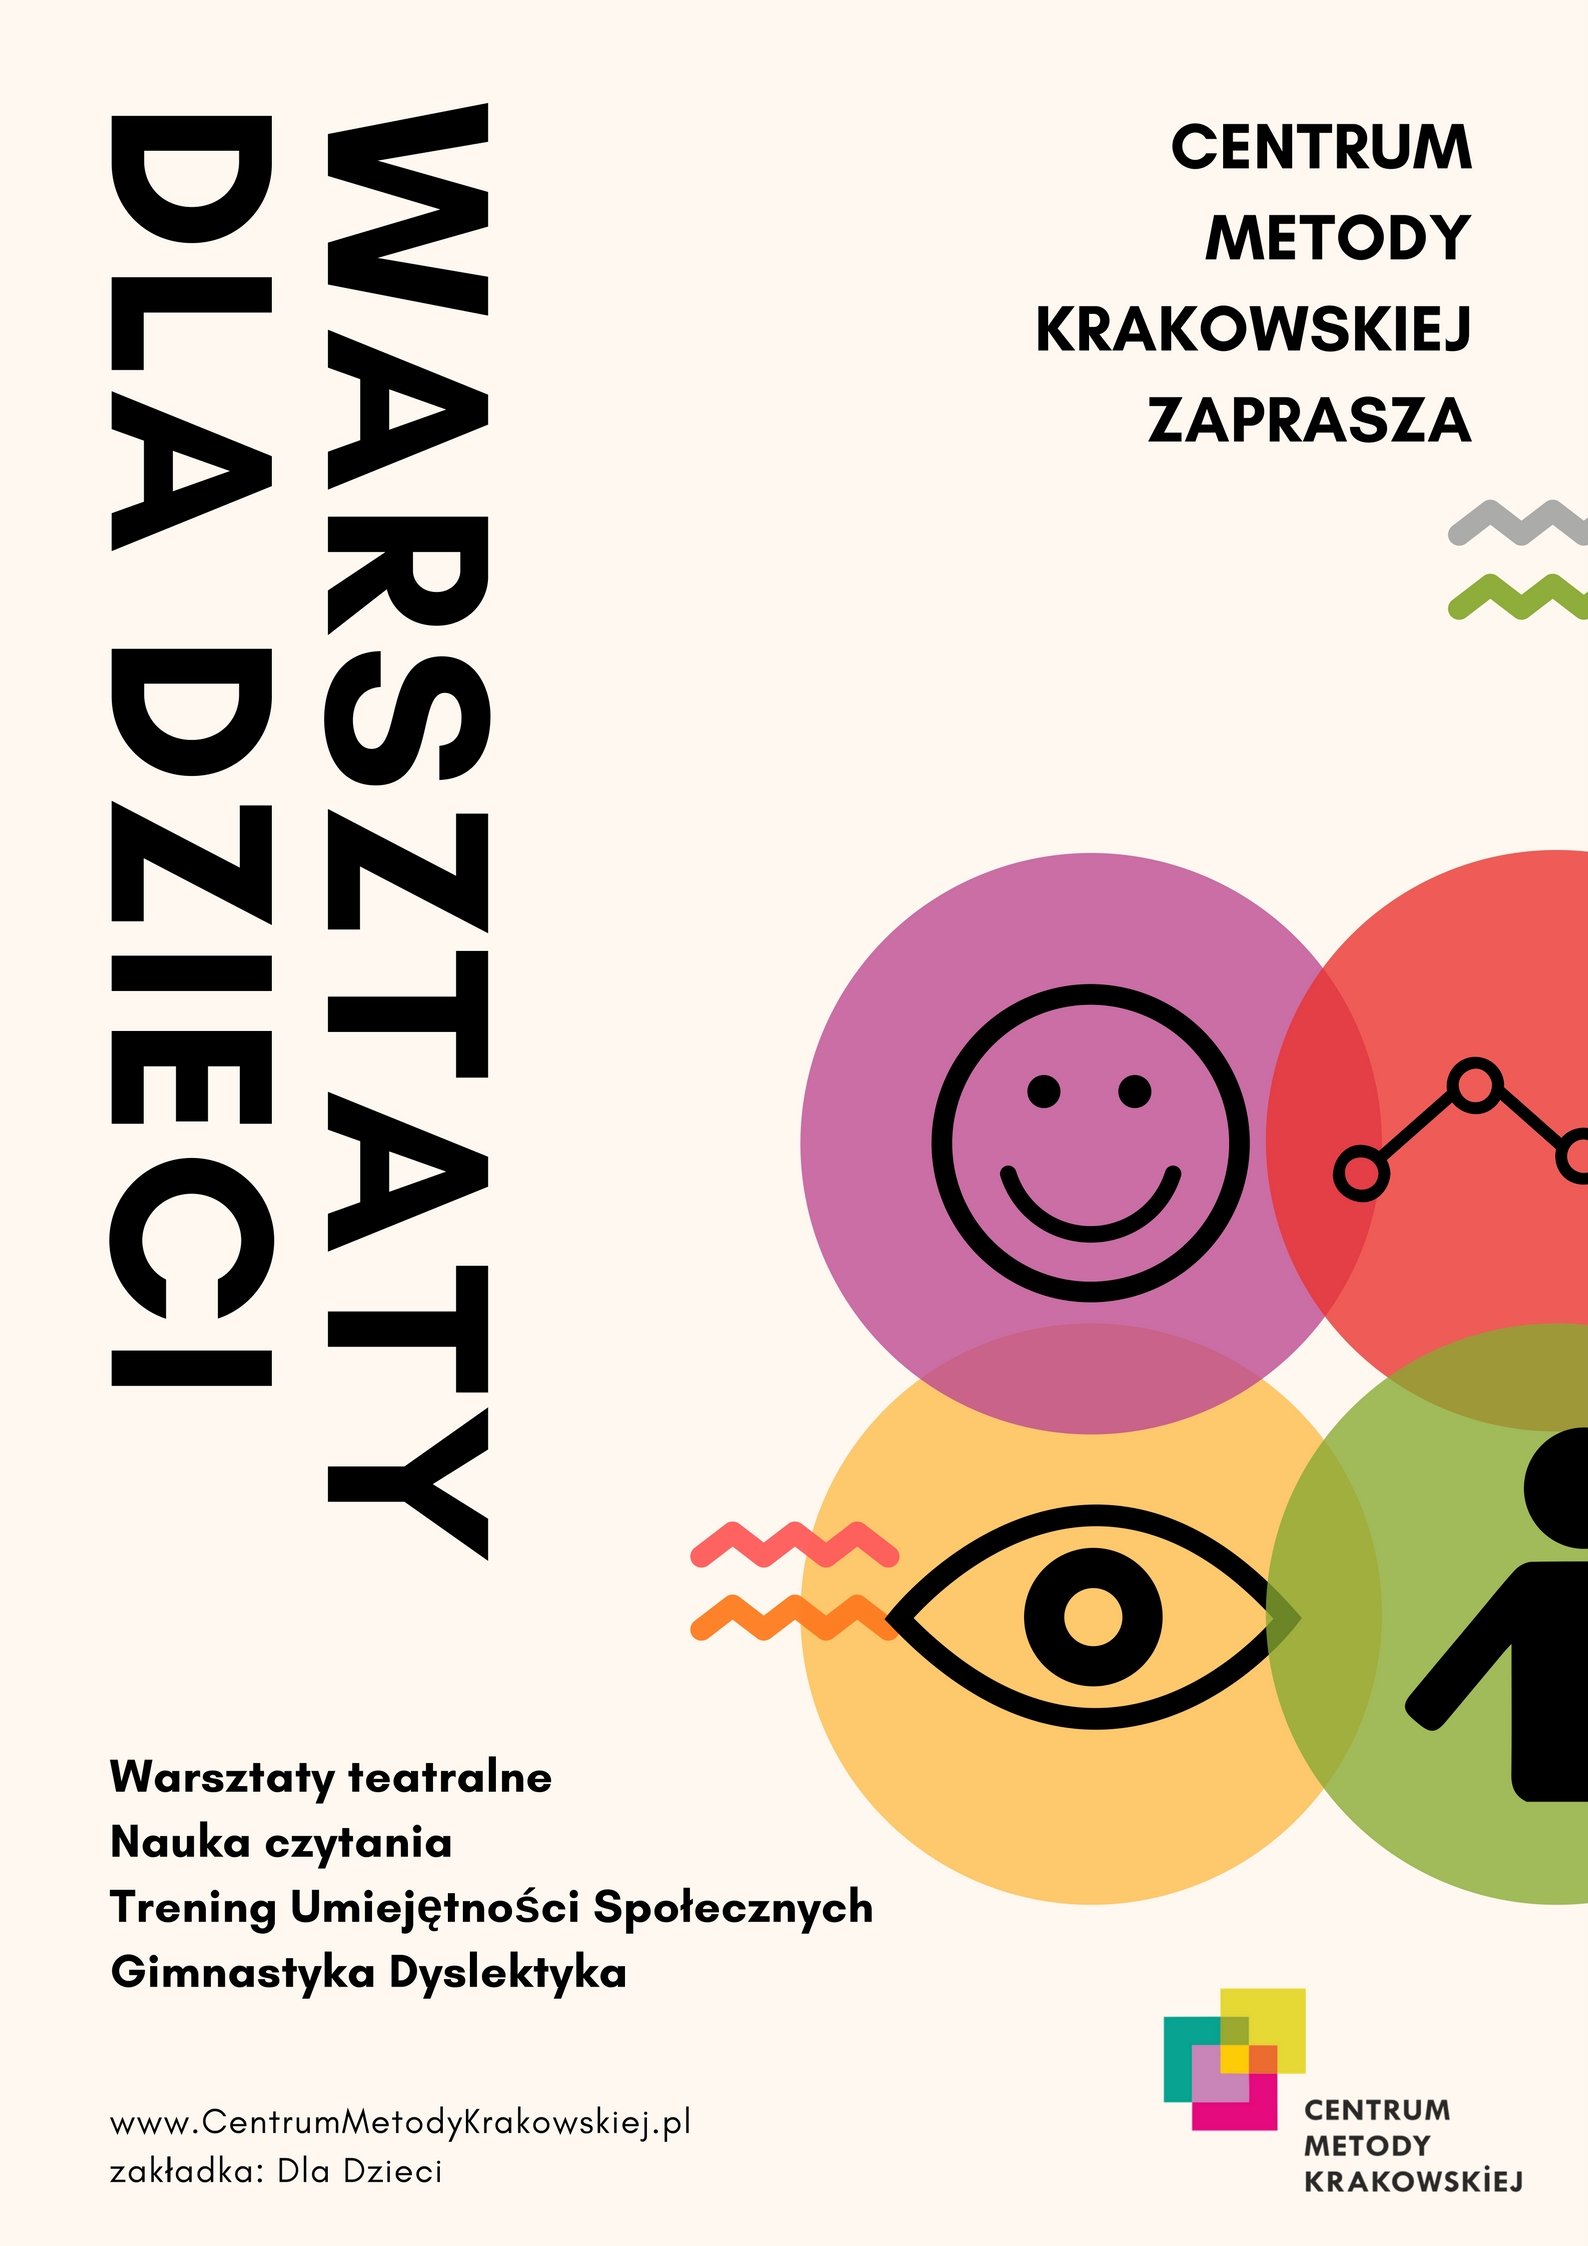 Centrum Metody Krakowskiej zaprasza na warsztaty dla Dzieci